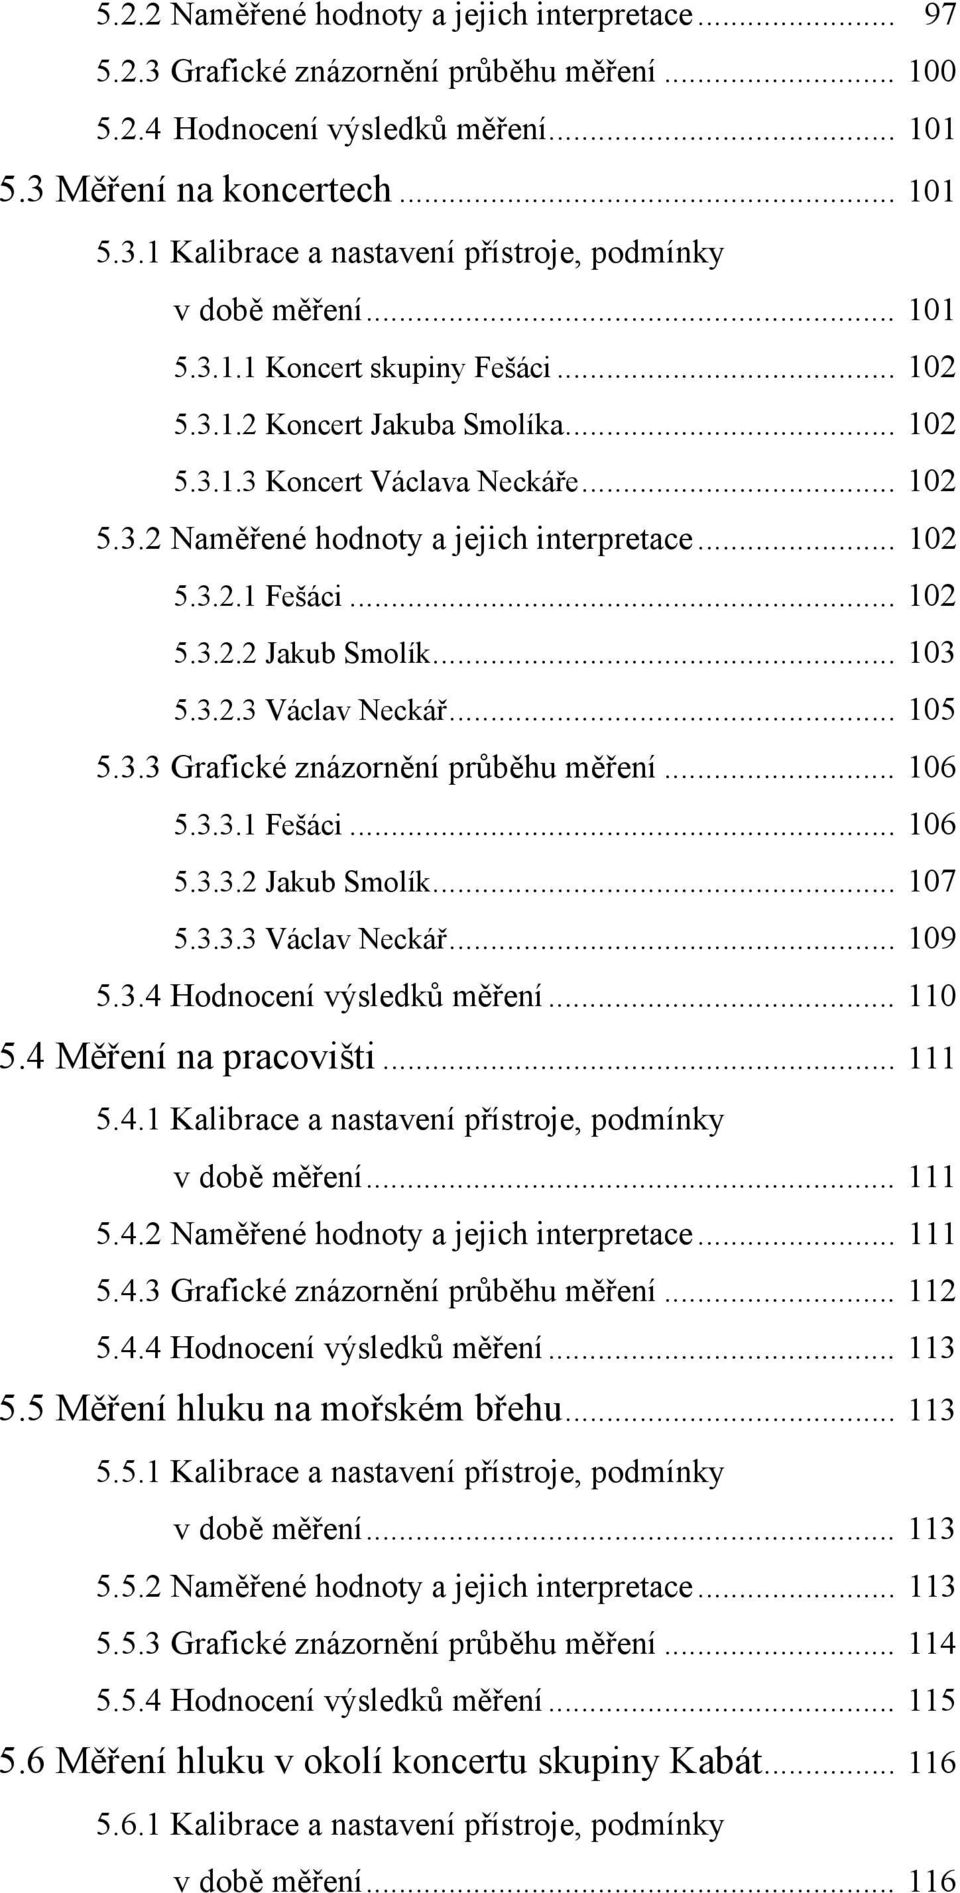 .. 103 5.3.2.3 Václav Neckář... 105 5.3.3 Grafické znázornění průběhu měření... 106 5.3.3.1 Fešáci... 106 5.3.3.2 Jakub Smolík... 107 5.3.3.3 Václav Neckář... 109 5.3.4 Hodnocení výsledků měření.